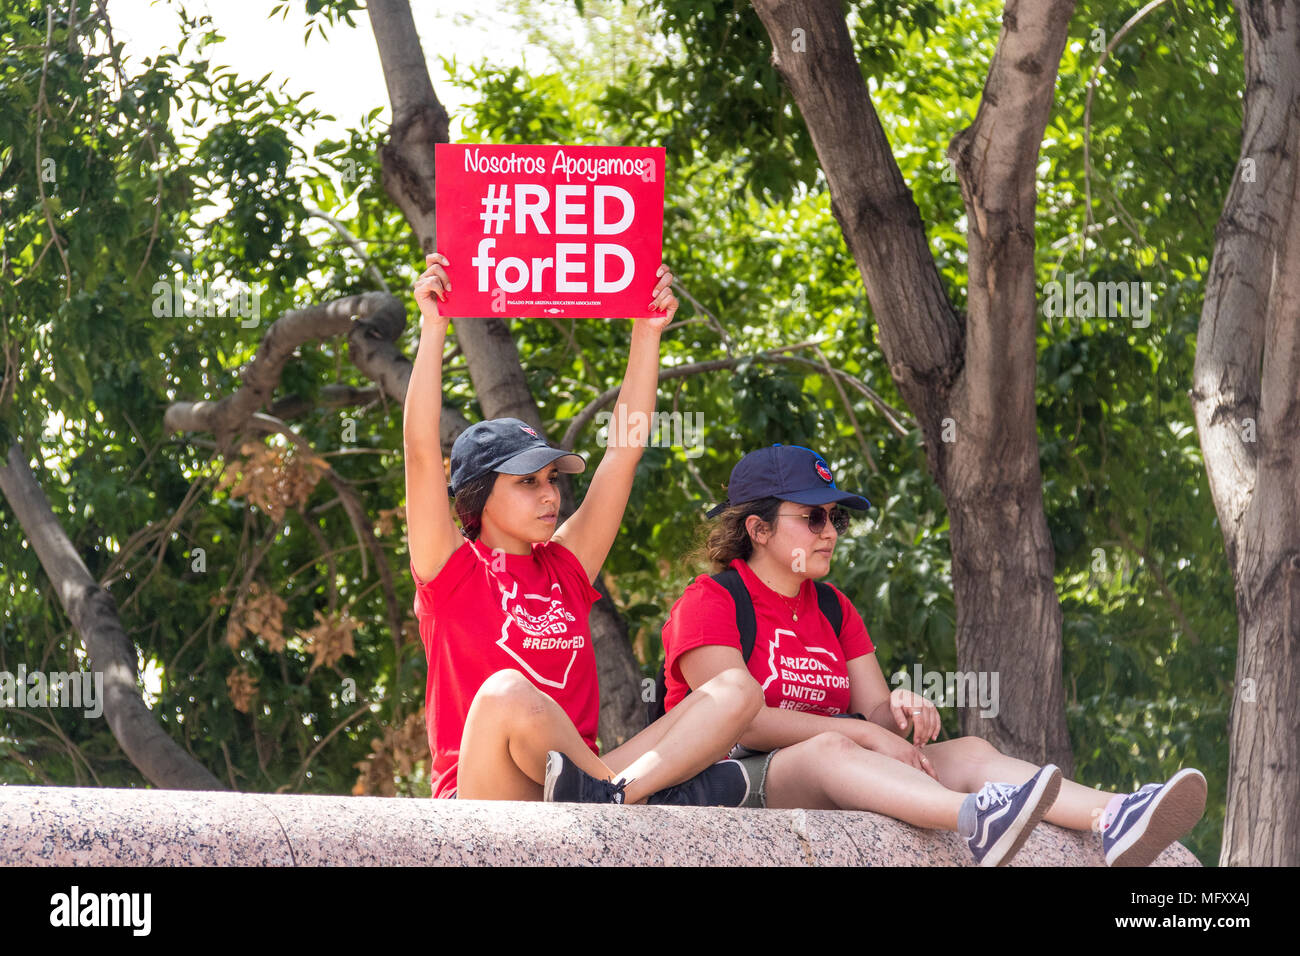 Phoenix, USA, 26 avril 2018, le n° RedForEd REDforED - Mars nous APOYAMOS - deux jeunes femmes. Credit : Michelle Jones - Arizona/Alamy Live News. Banque D'Images